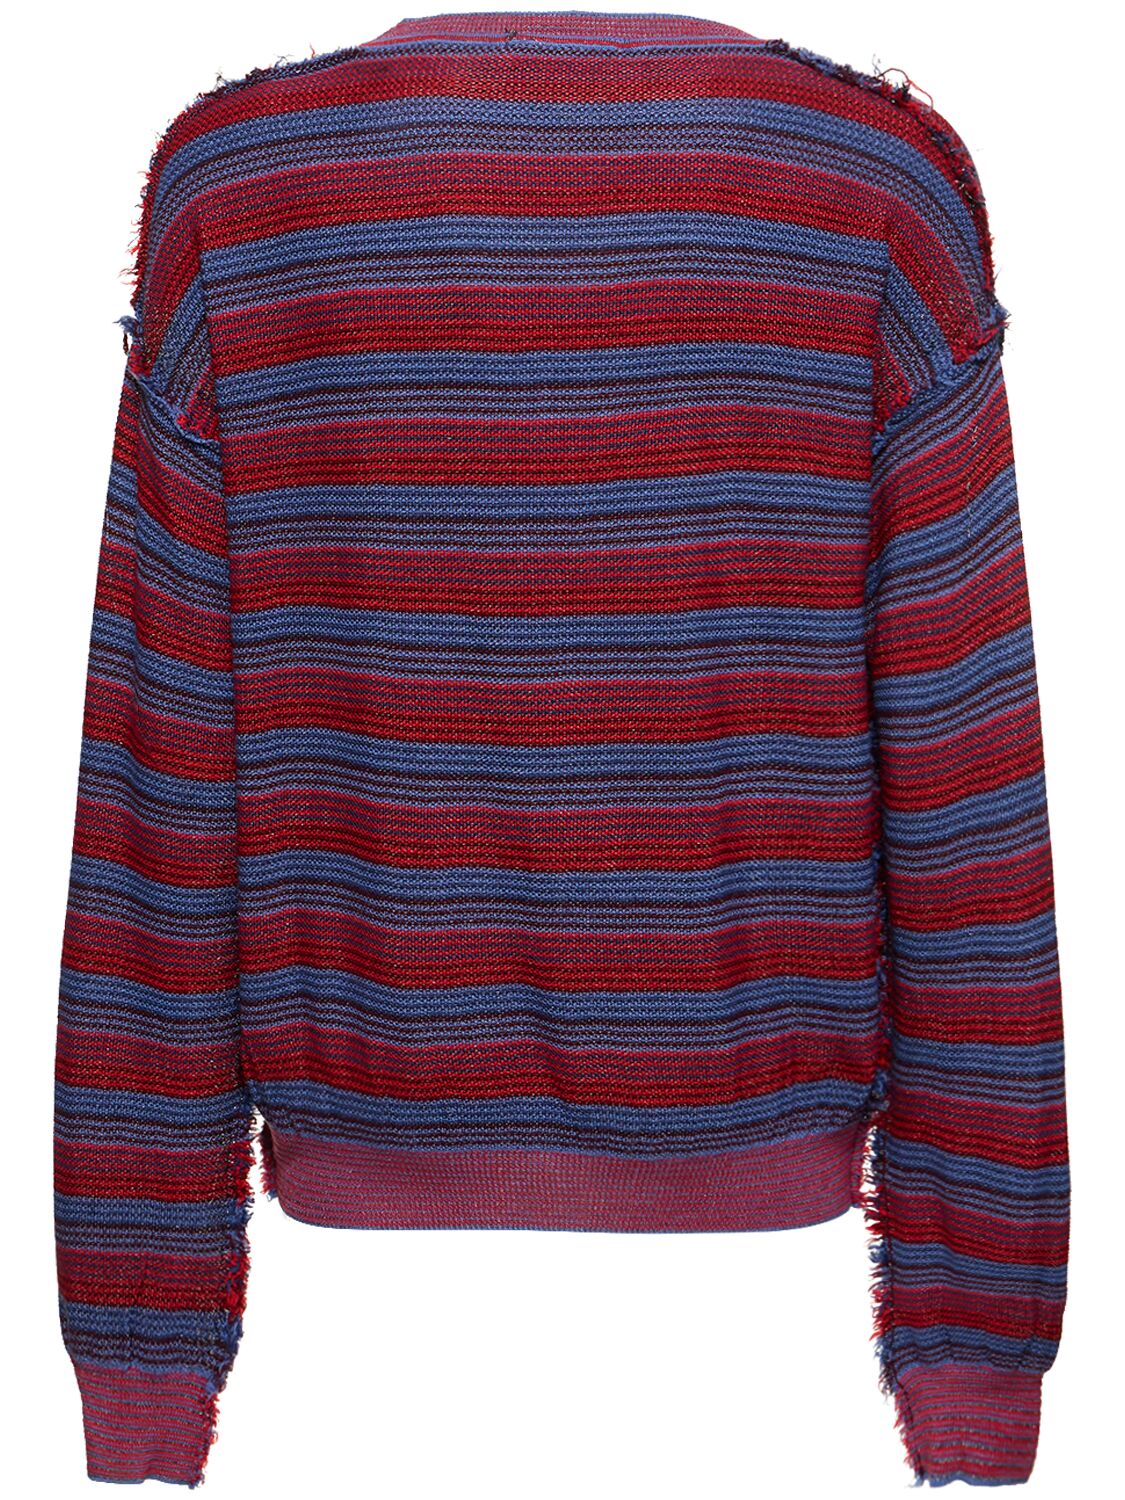 Vivienne Westwood Red Alex Sweater